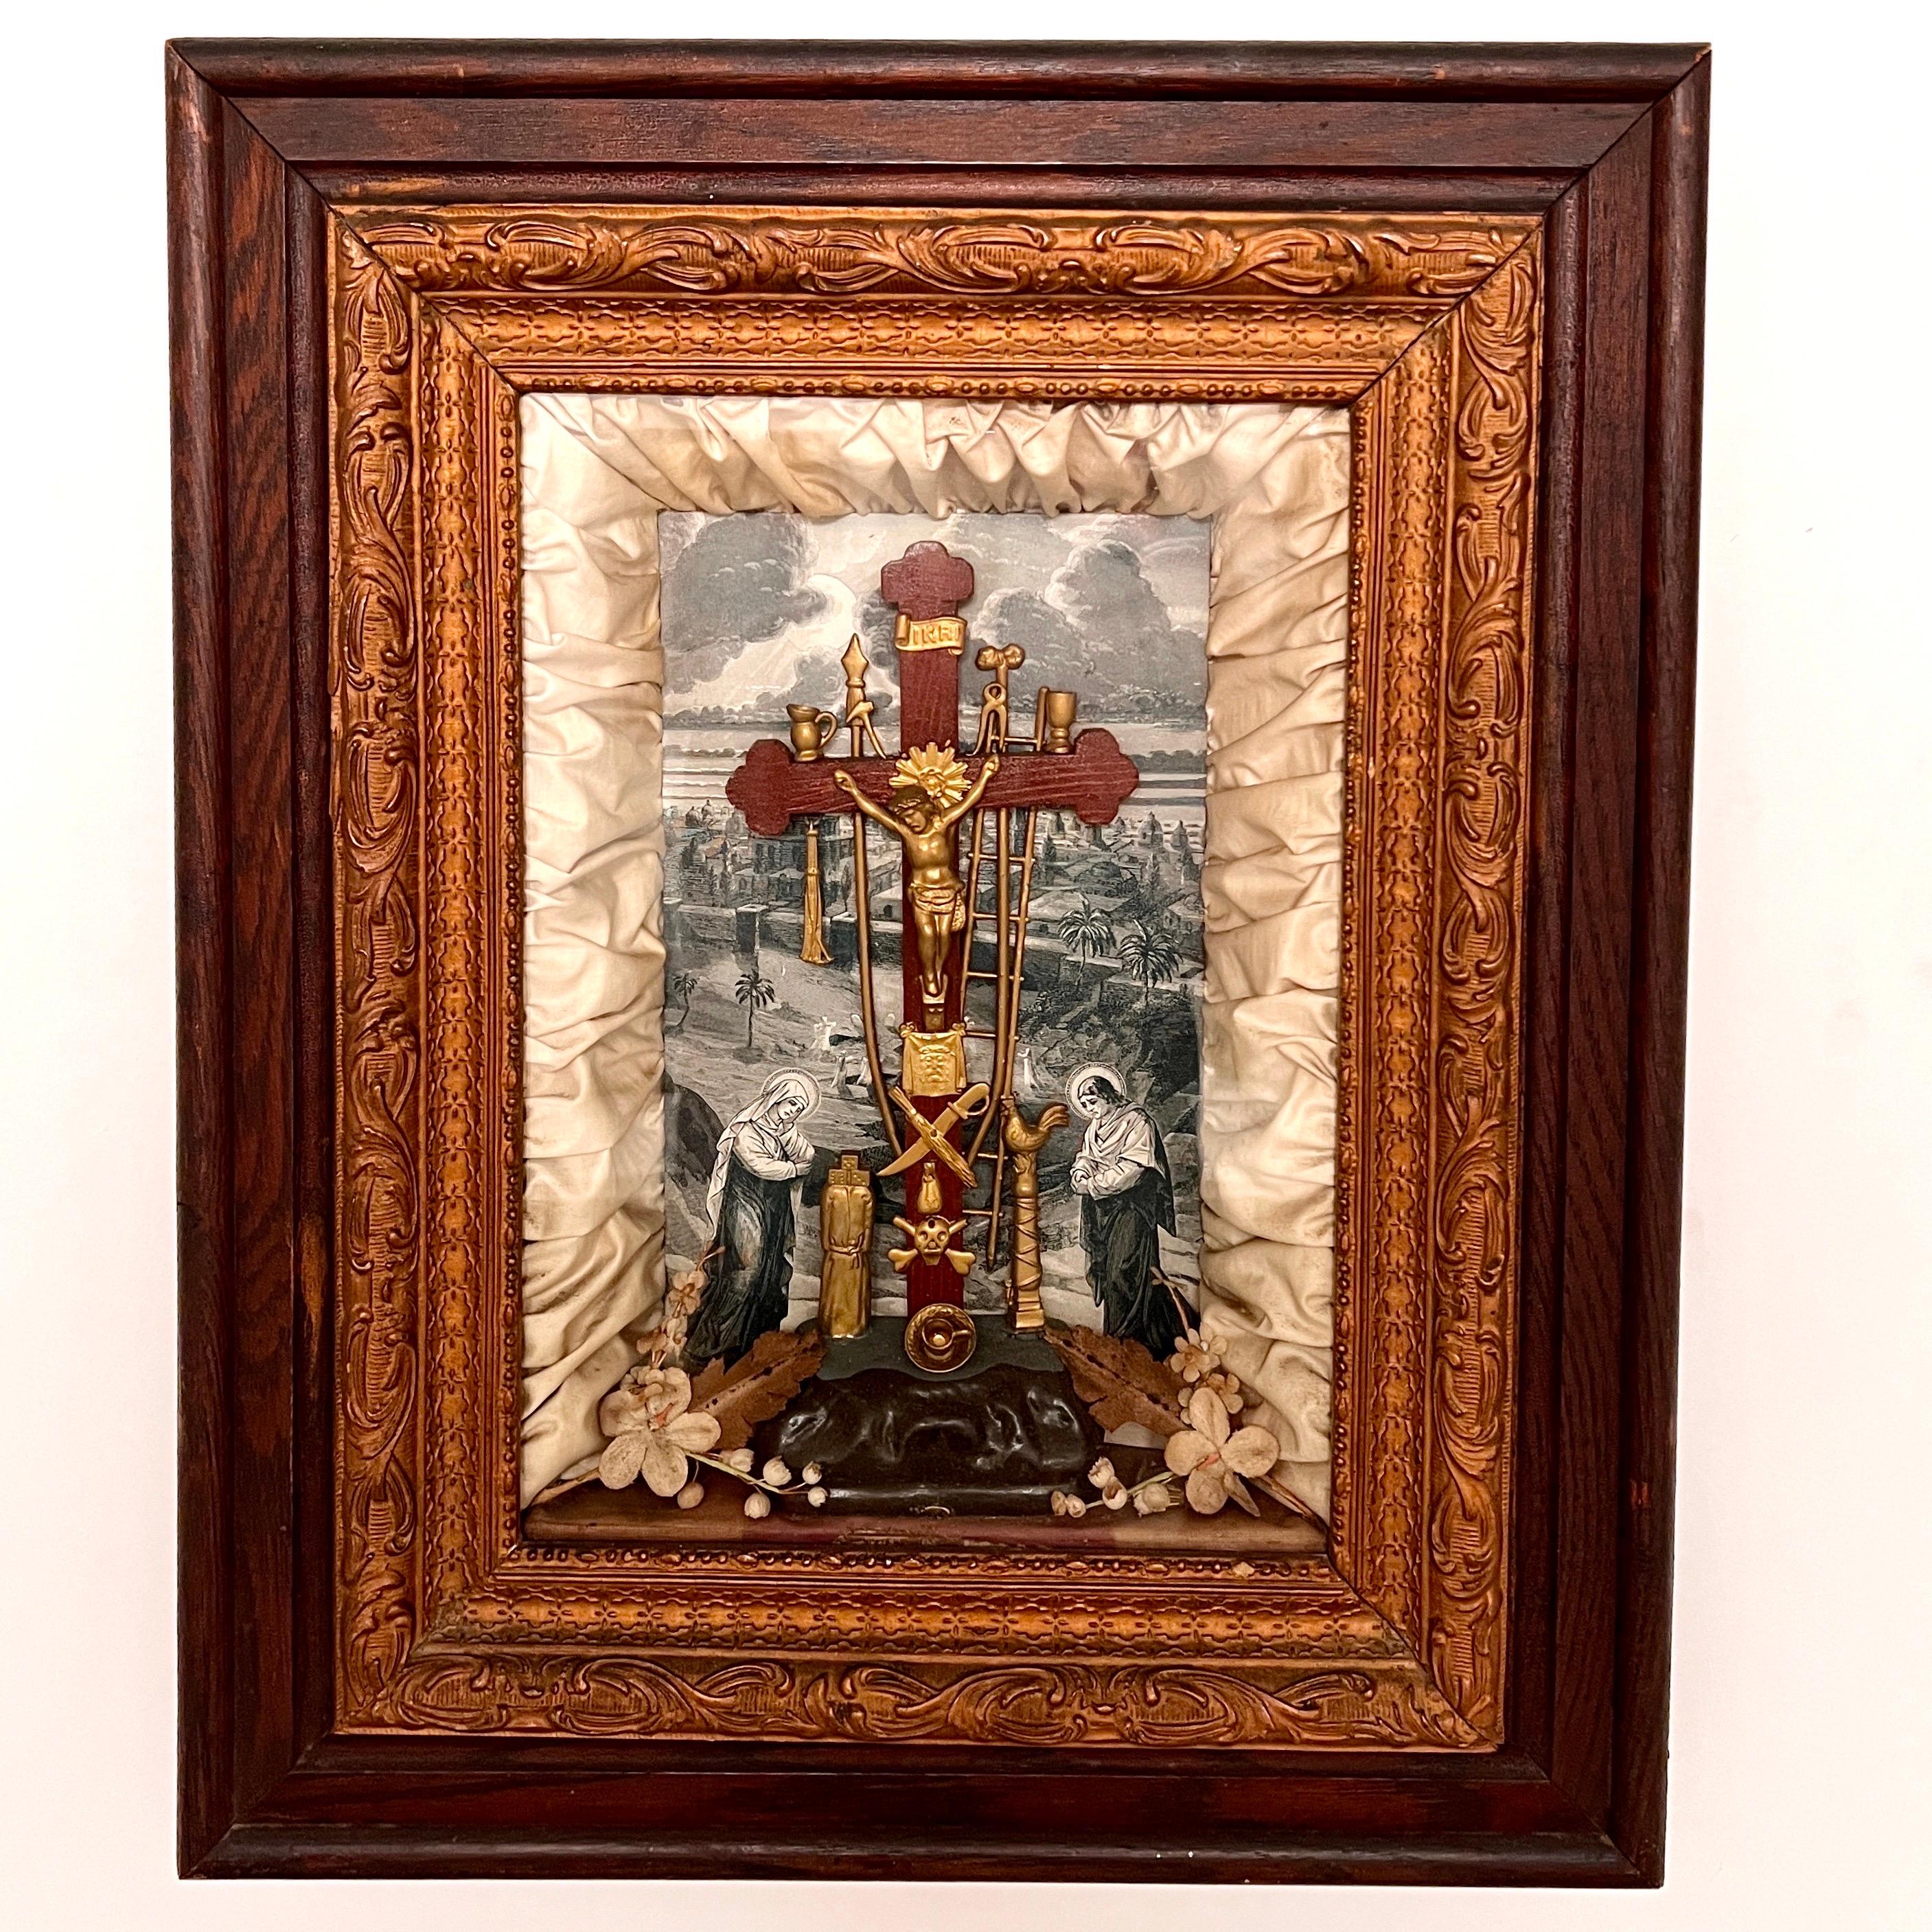 Cadre de boîte à ombre religieux de l'époque victorienne représentant le Christ et les instruments de la Passion, également connus sous le nom d'Arma Christi. Impression de fond dans les tons sépia avec au centre une croix en bois avec un Christ en